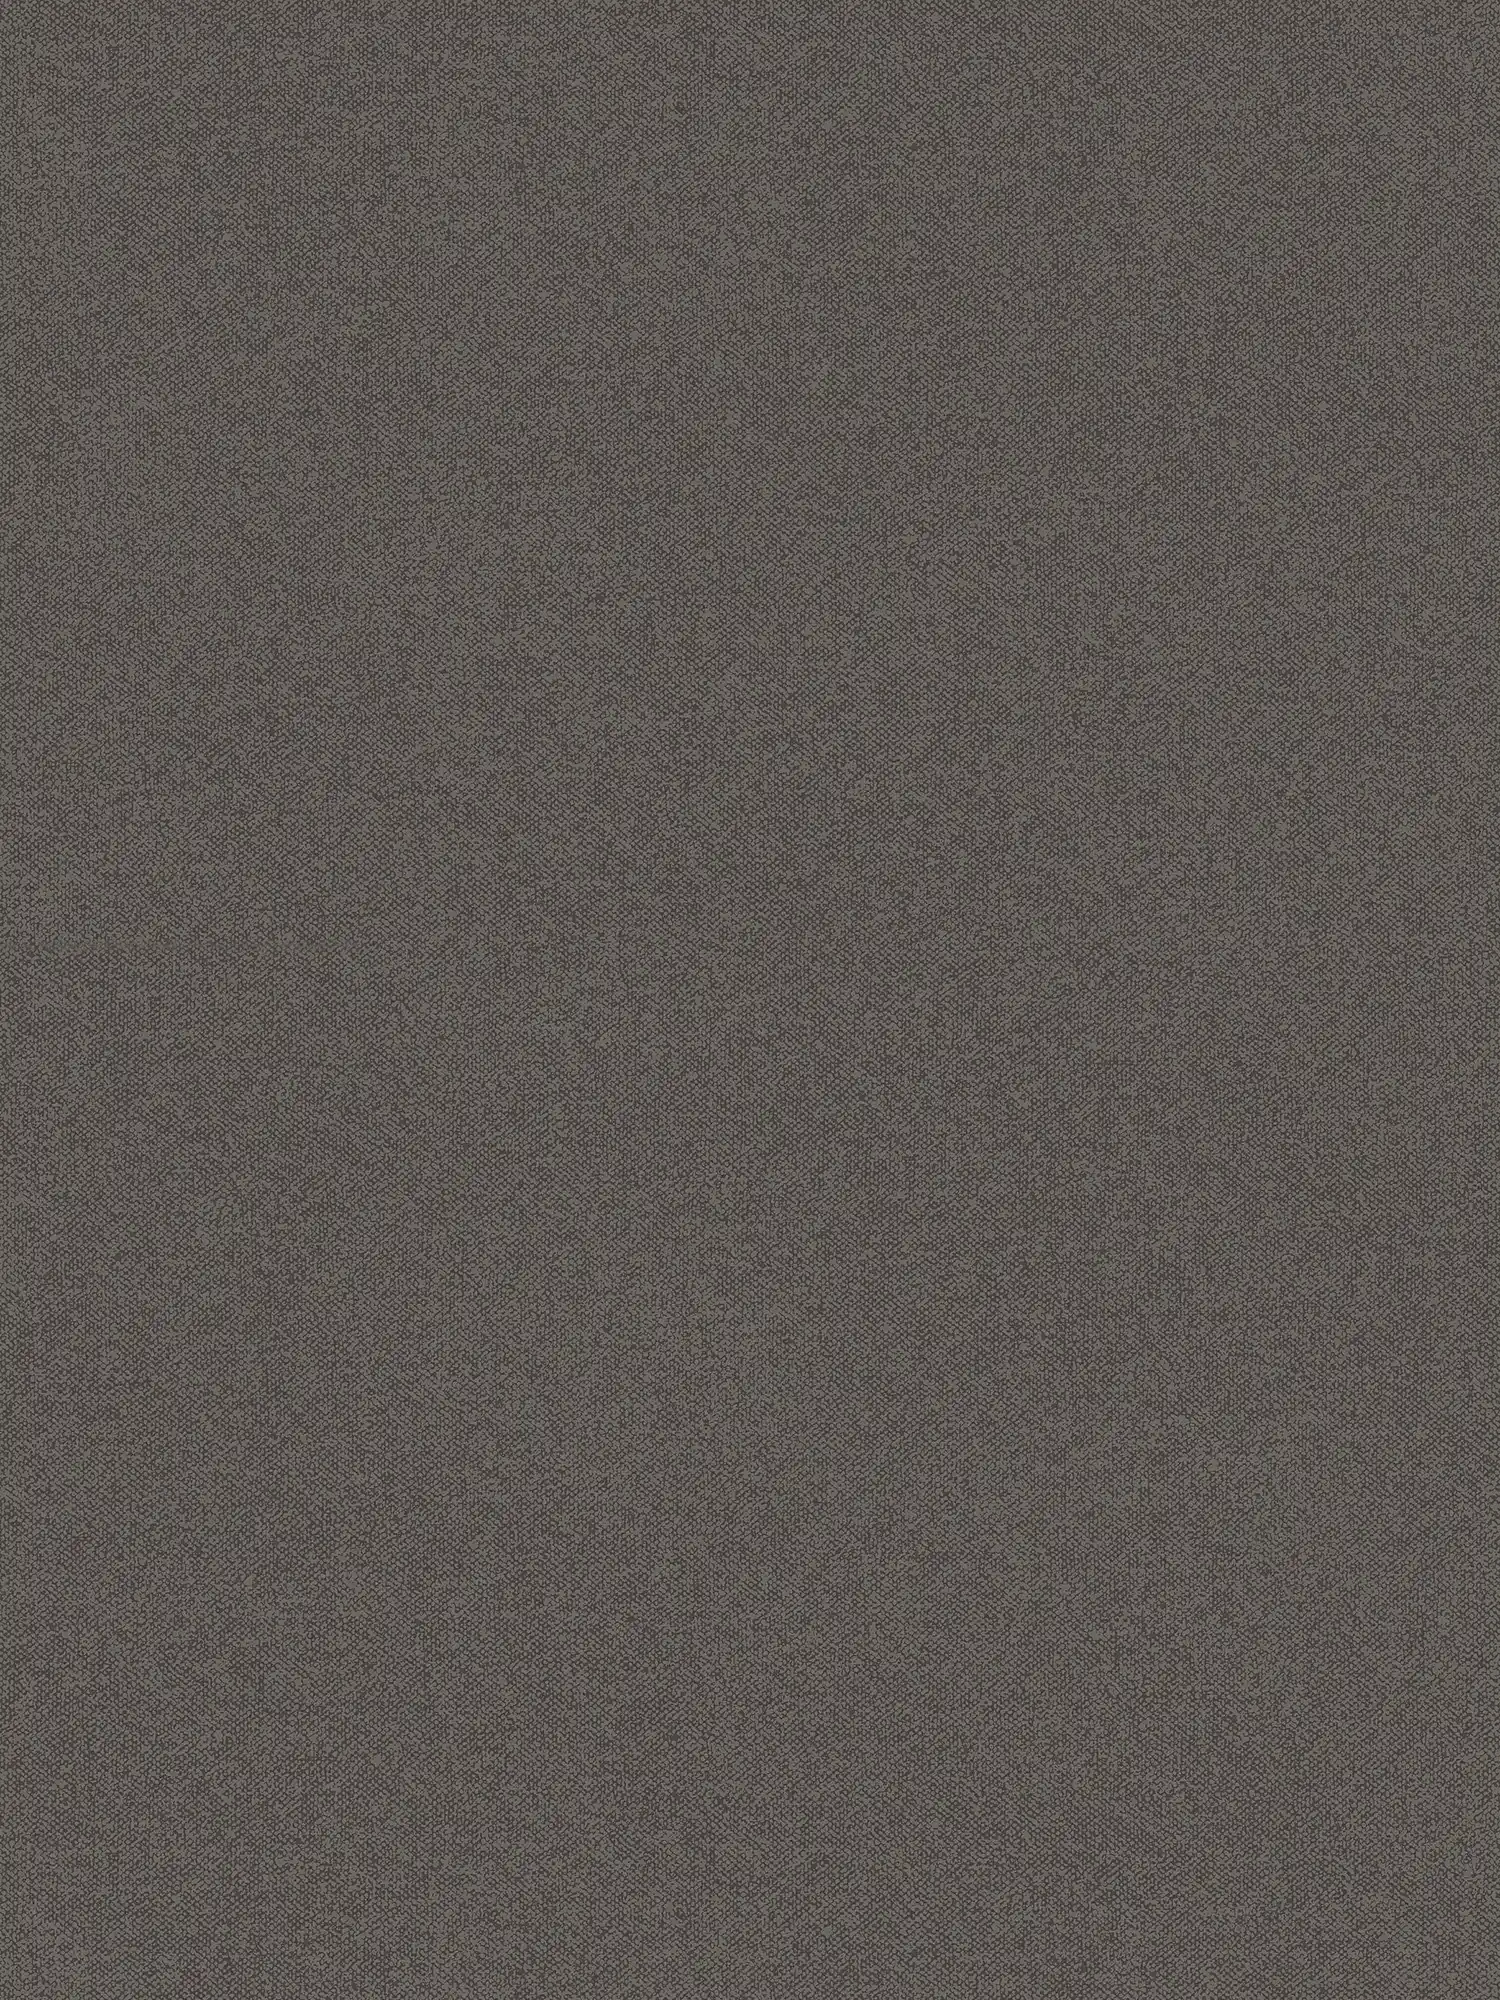 Papel pintado liso con aspecto de lino - marrón, negro
